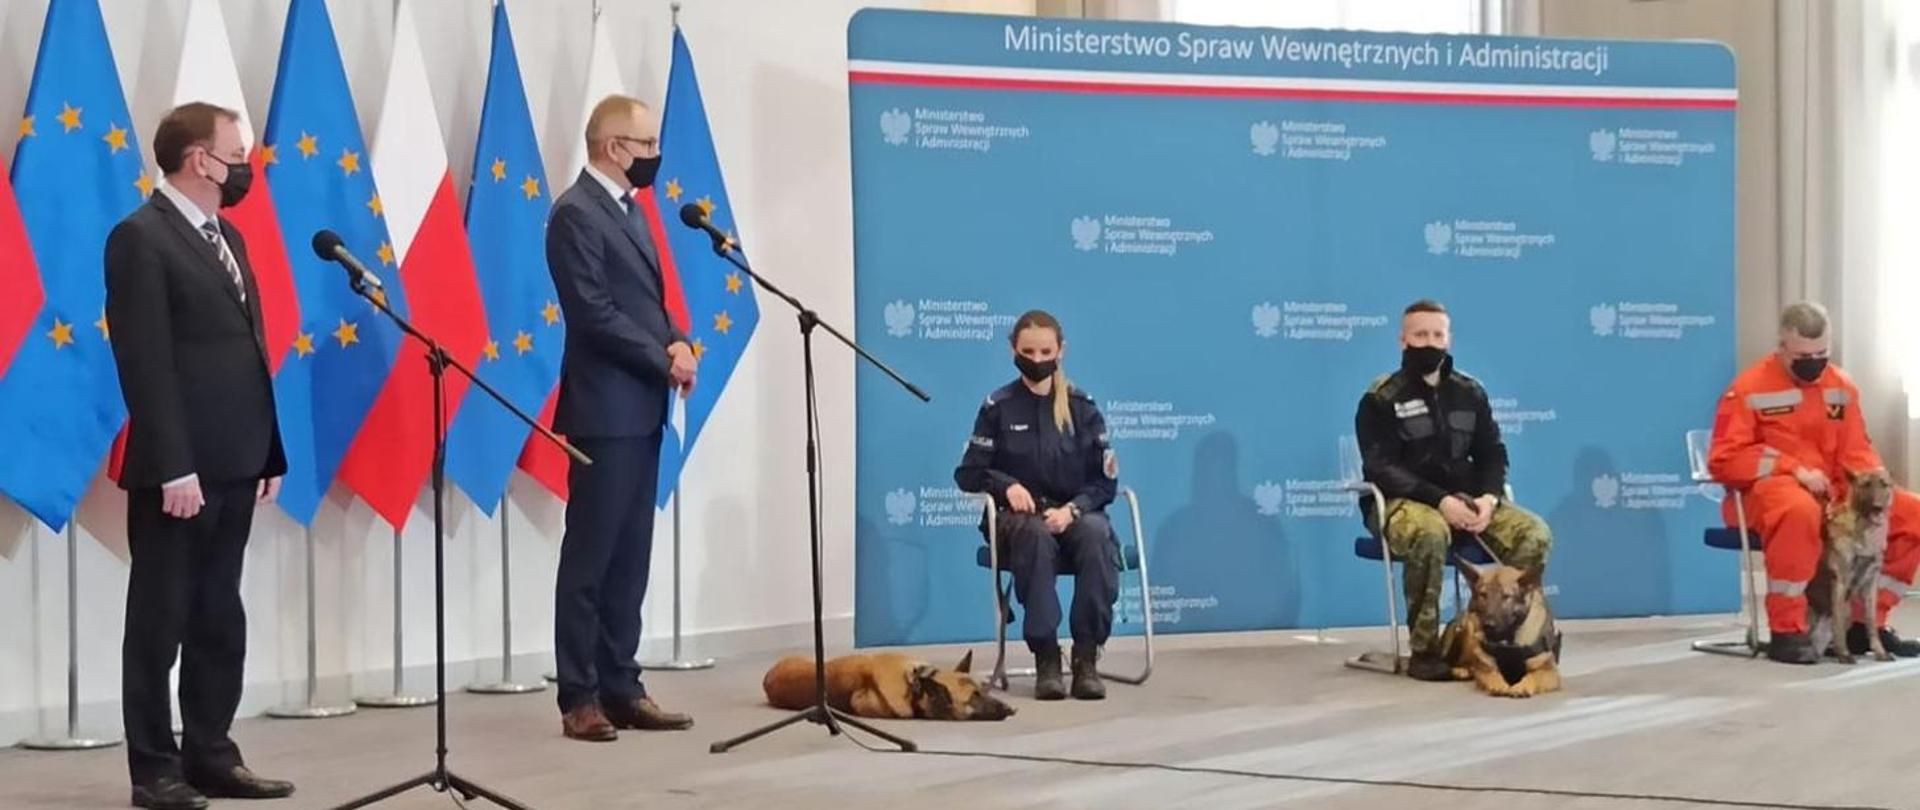 Na zdjęciu Minister Spraw Wewnętrznych oraz przedstawiciele trzech służ ratowniczych z psami.